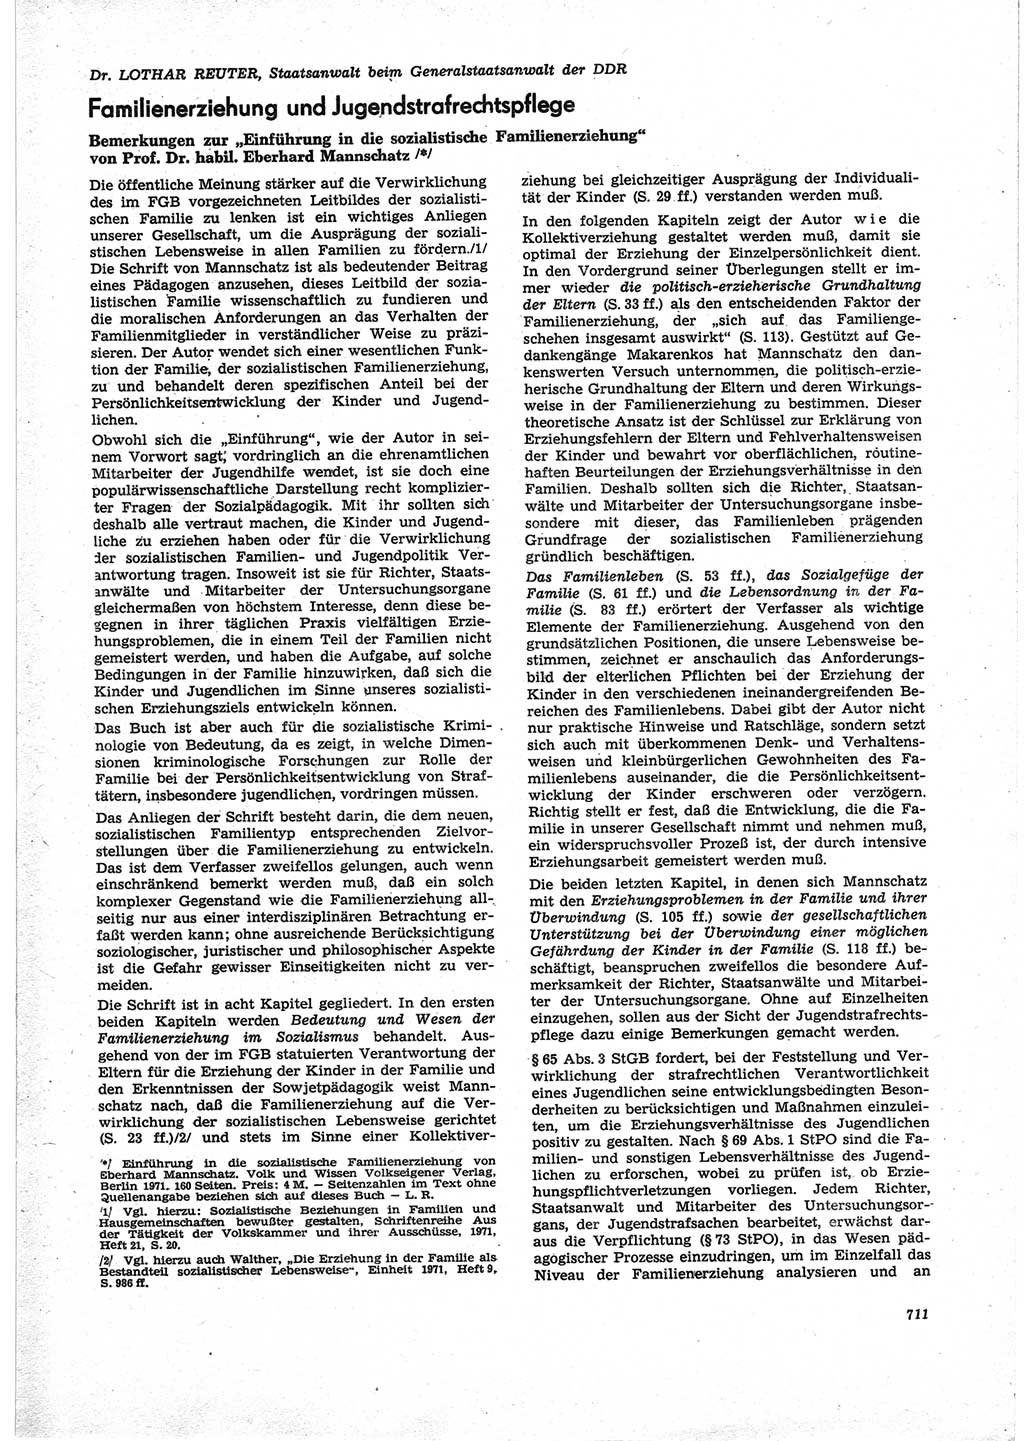 Neue Justiz (NJ), Zeitschrift für Recht und Rechtswissenschaft [Deutsche Demokratische Republik (DDR)], 25. Jahrgang 1971, Seite 711 (NJ DDR 1971, S. 711)